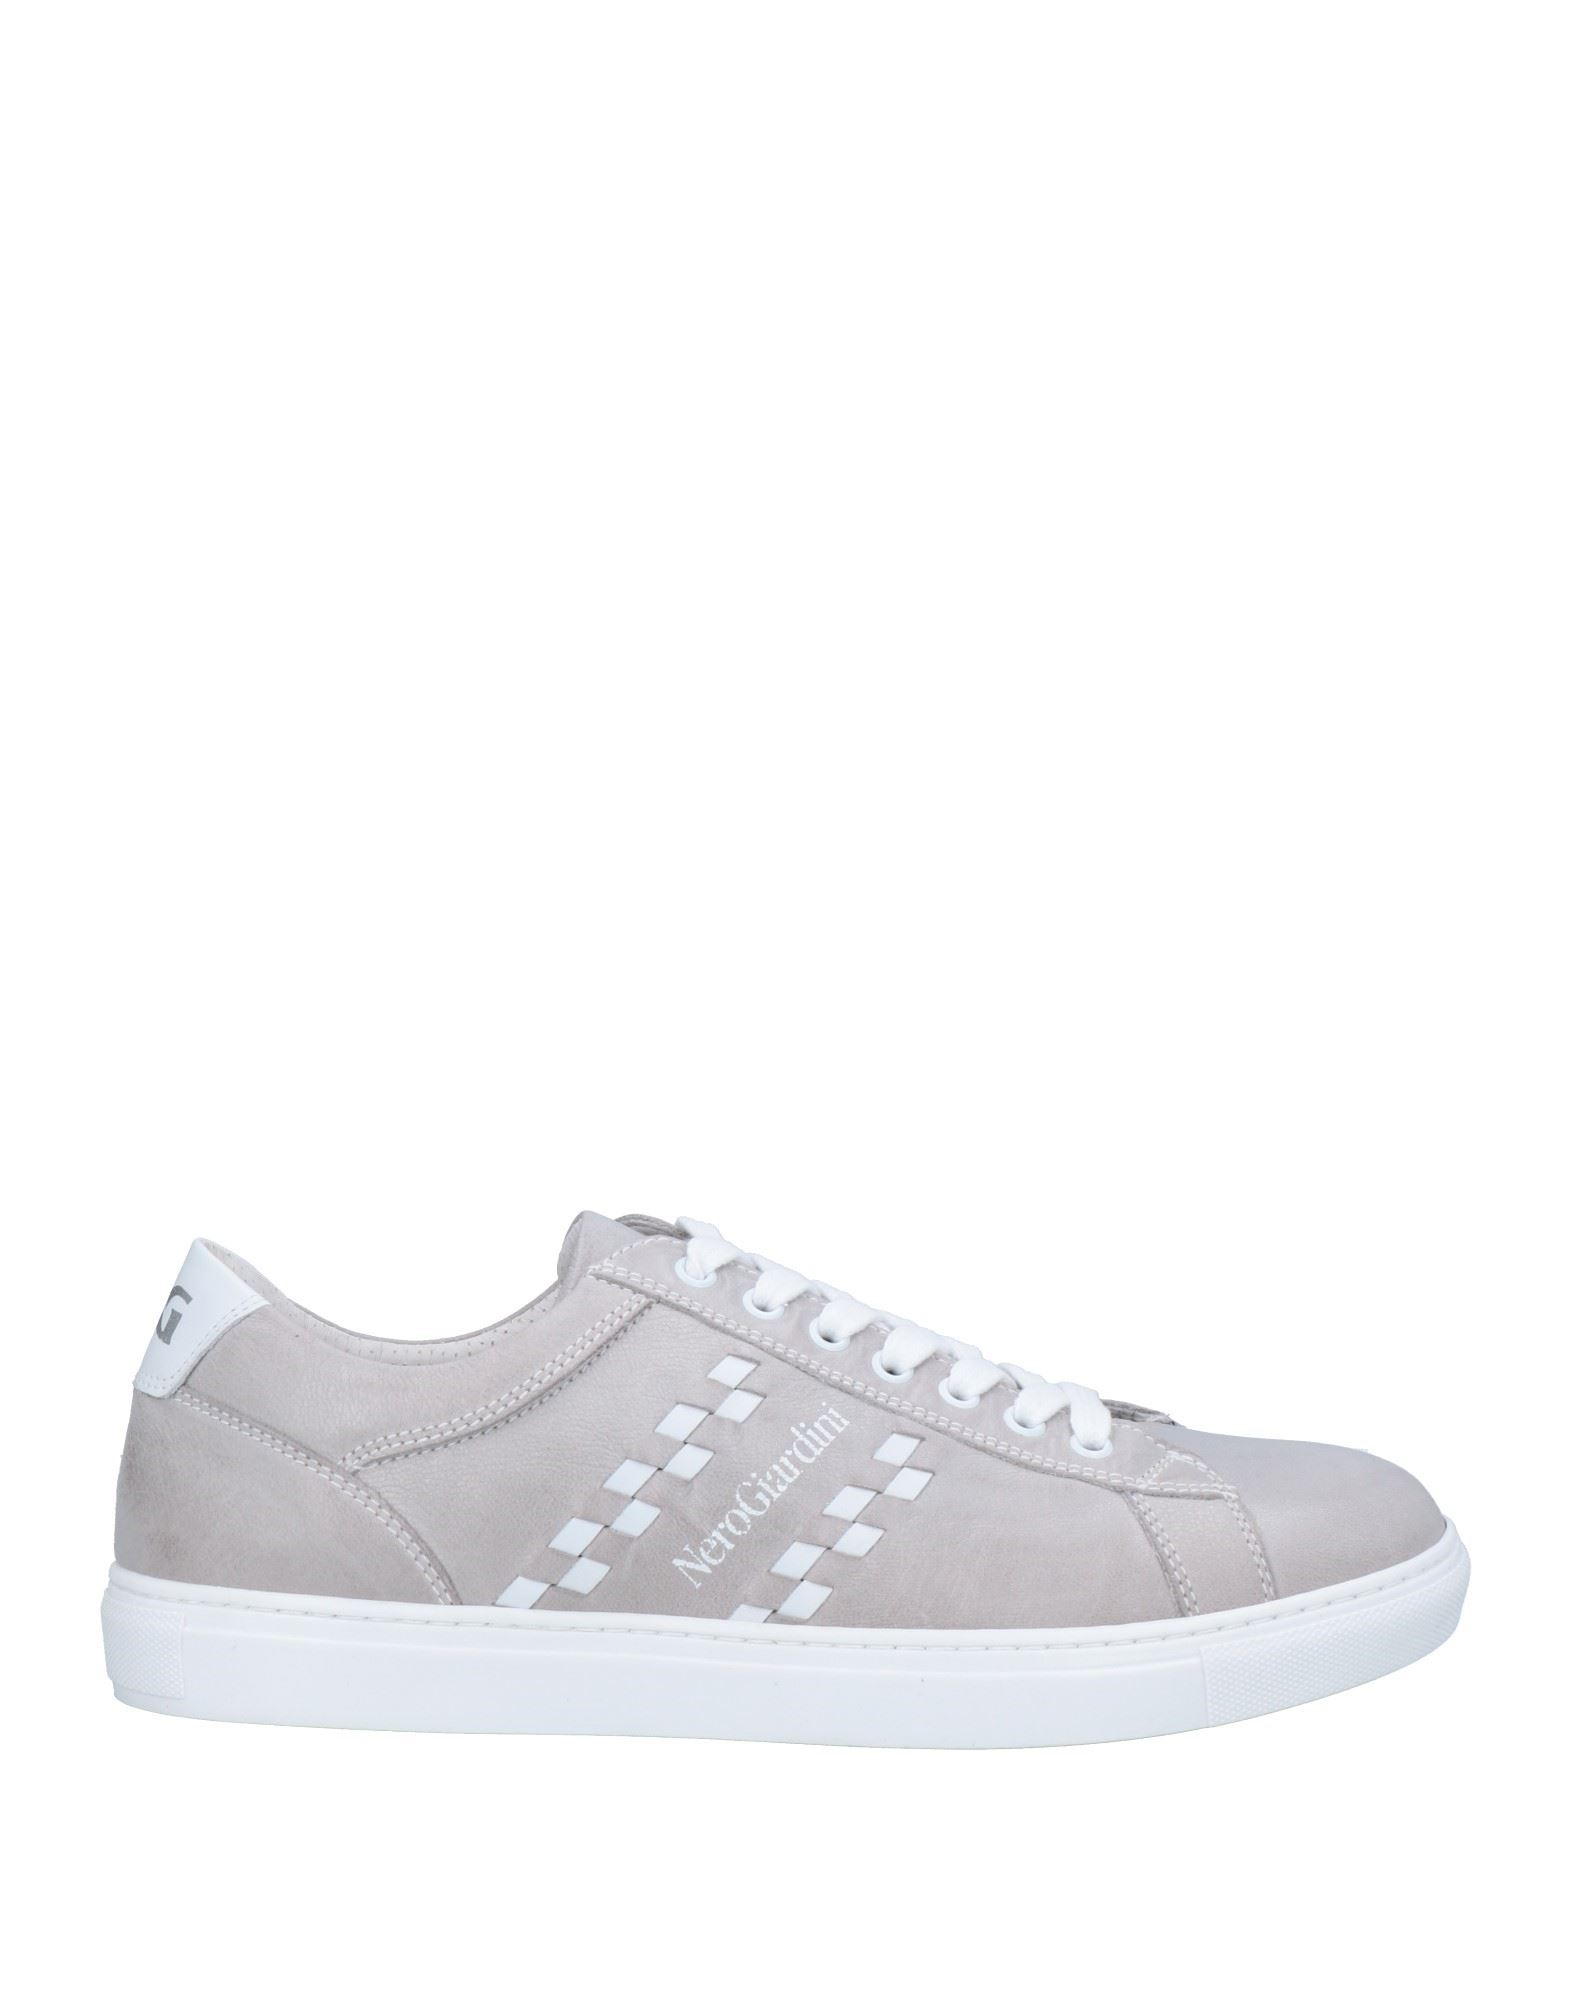 Nero Giardini Sneakers In Light Grey